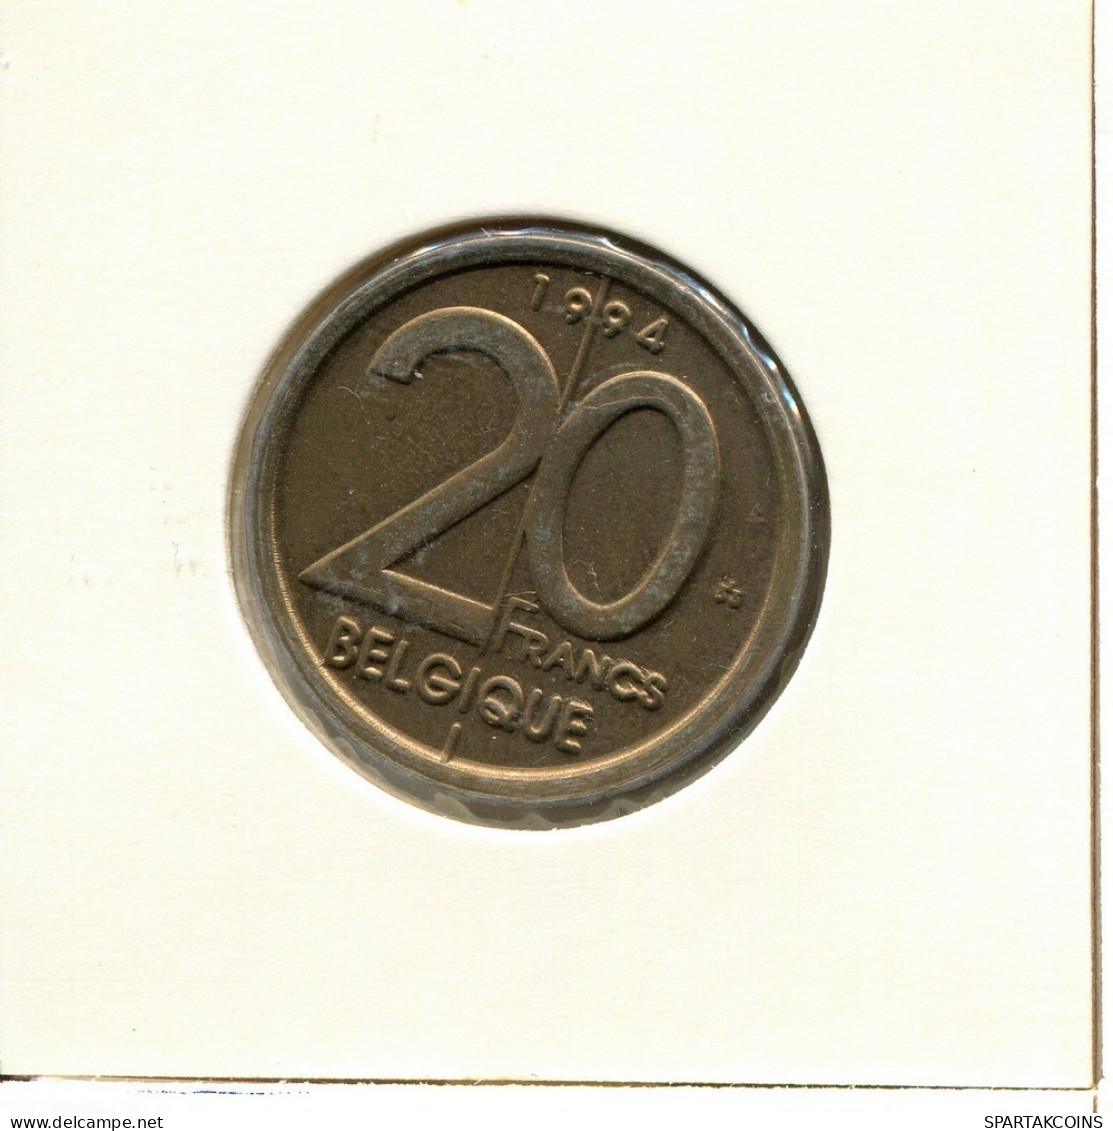 20 FRANCS 1994 FRENCH Text BELGIUM Coin #BB365.U.A - 20 Francs